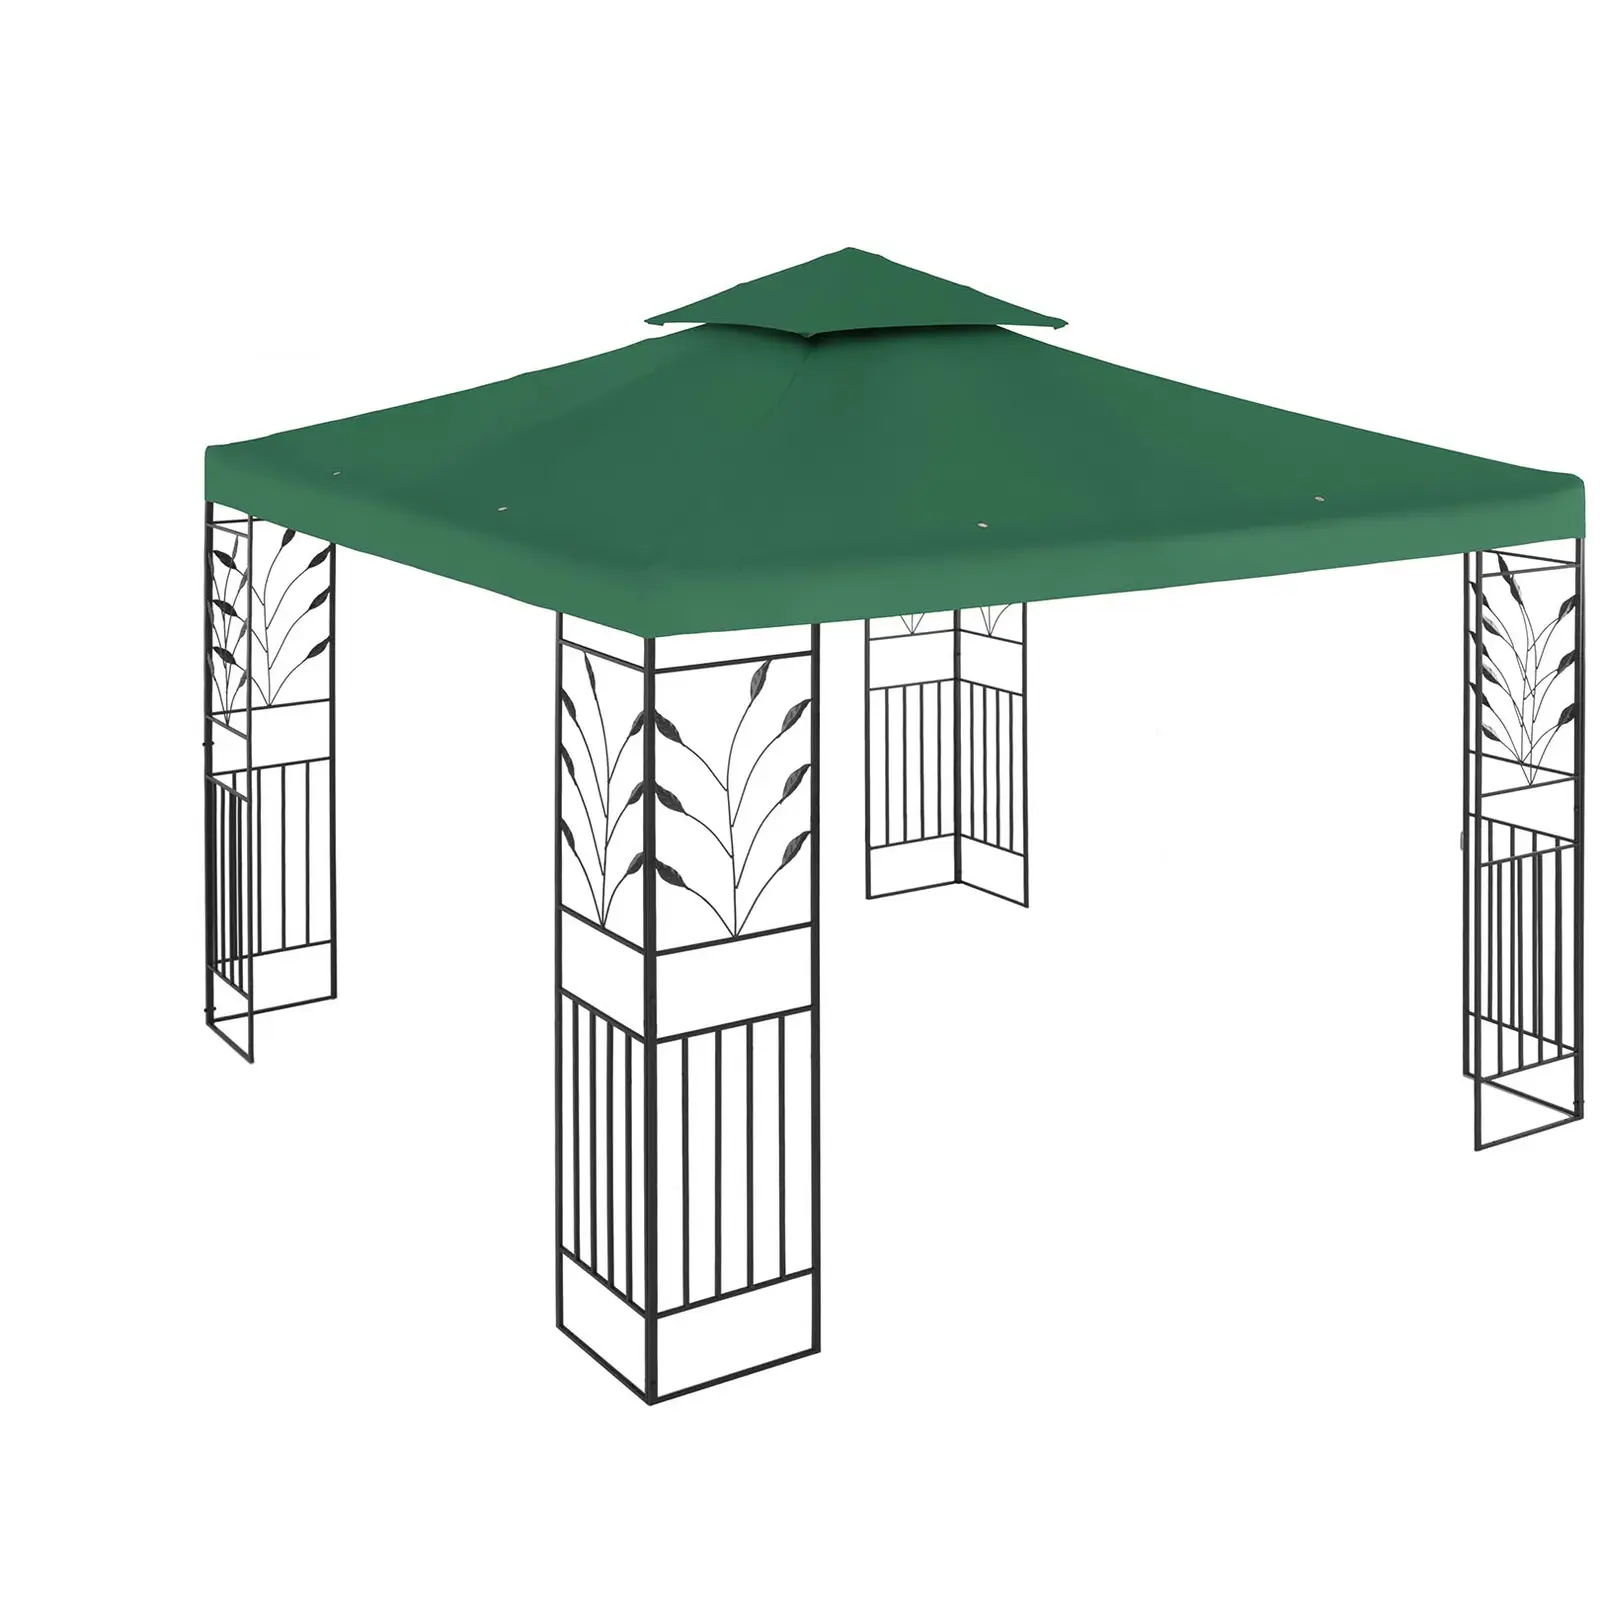 Paviljong - 3x3 m - 180 g/m² - mørkegrønn